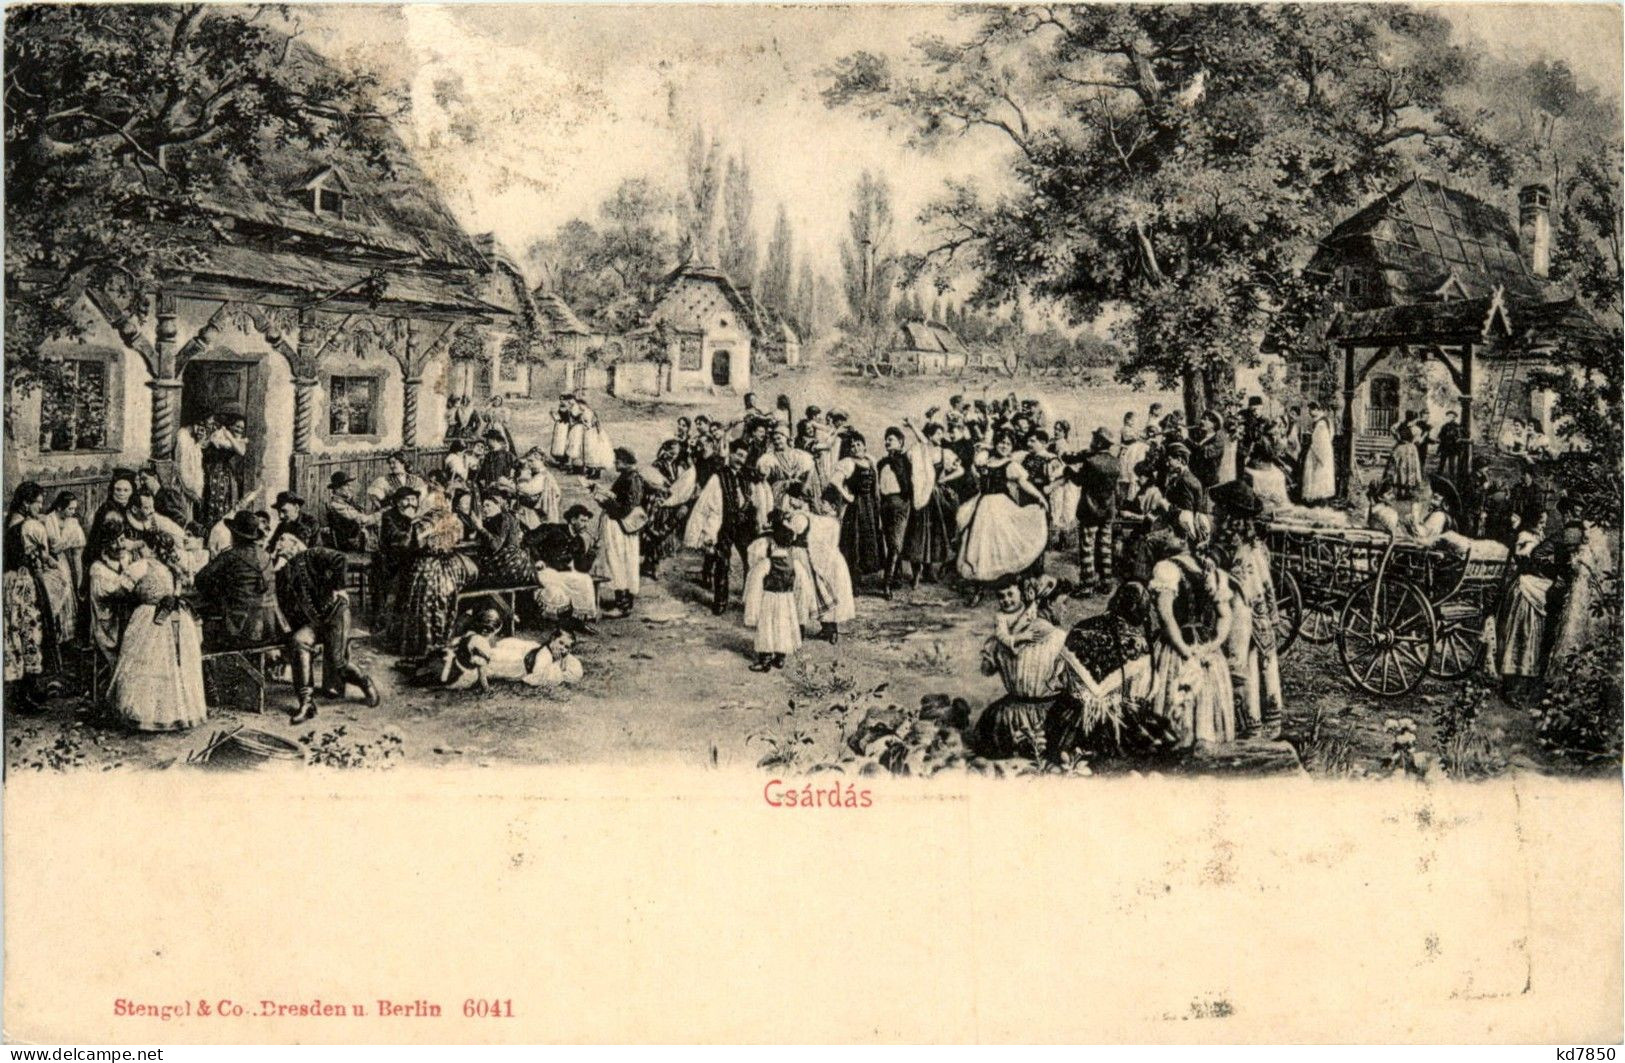 Csardas - Hungary